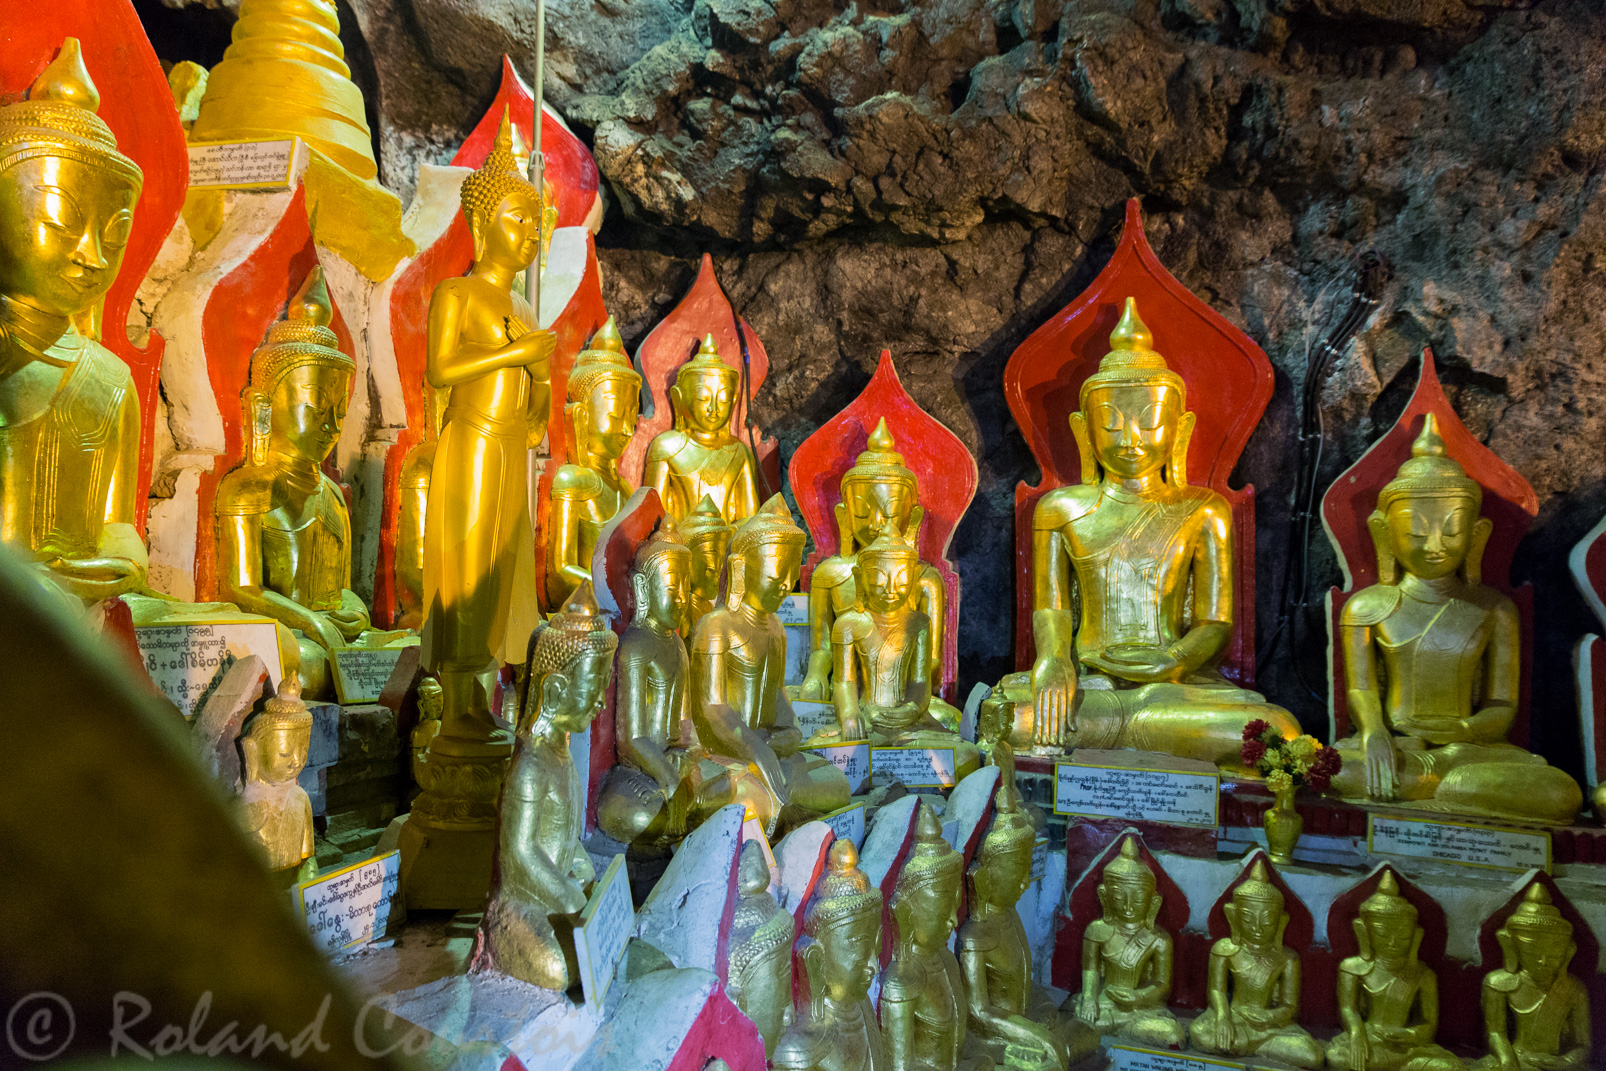 Grottes bouddhiques de Shwe-U min qui contiennent des milliers de statues de bronze, de bois ou de pierre, accumulées au fil des siècles par les pèlerins.